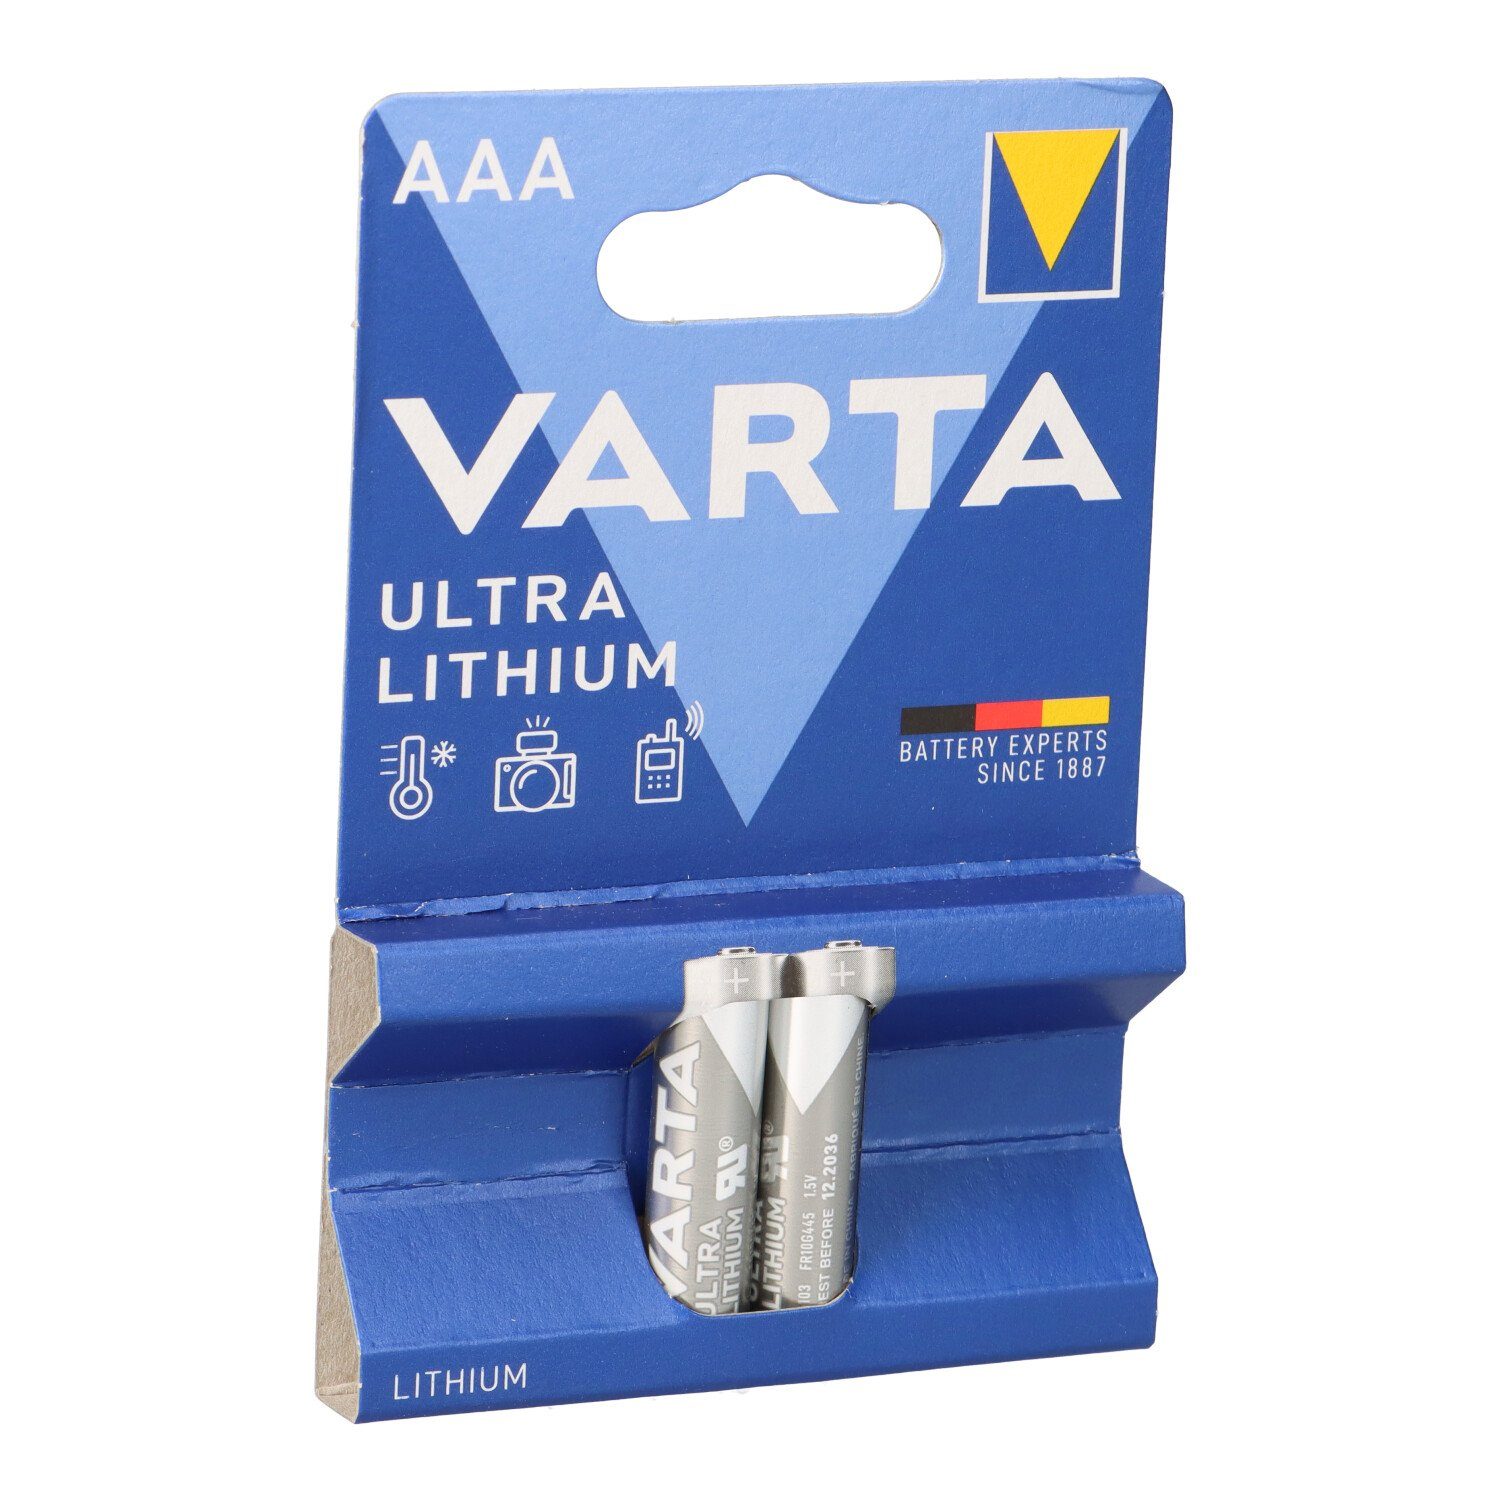 VARTA Varta Professional Lithium Micro Batterie 2er Blister AAA Batterie